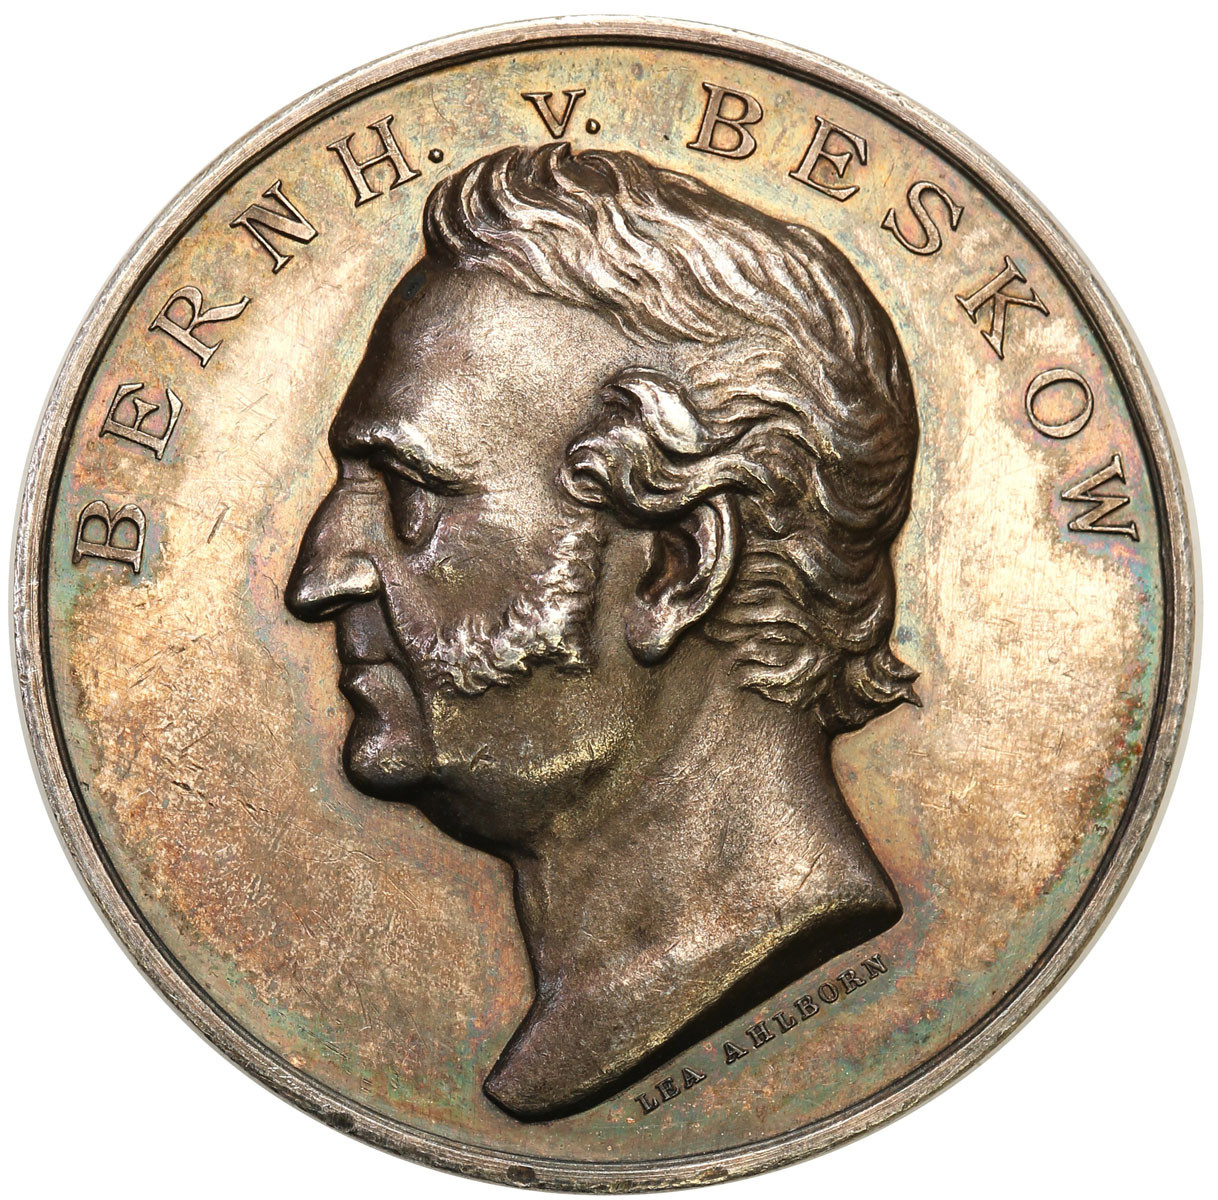 Szwecja, Karol XV (1859-1872). Medal 1868 - szwedzki poety Bernhard von Beskow, srebro